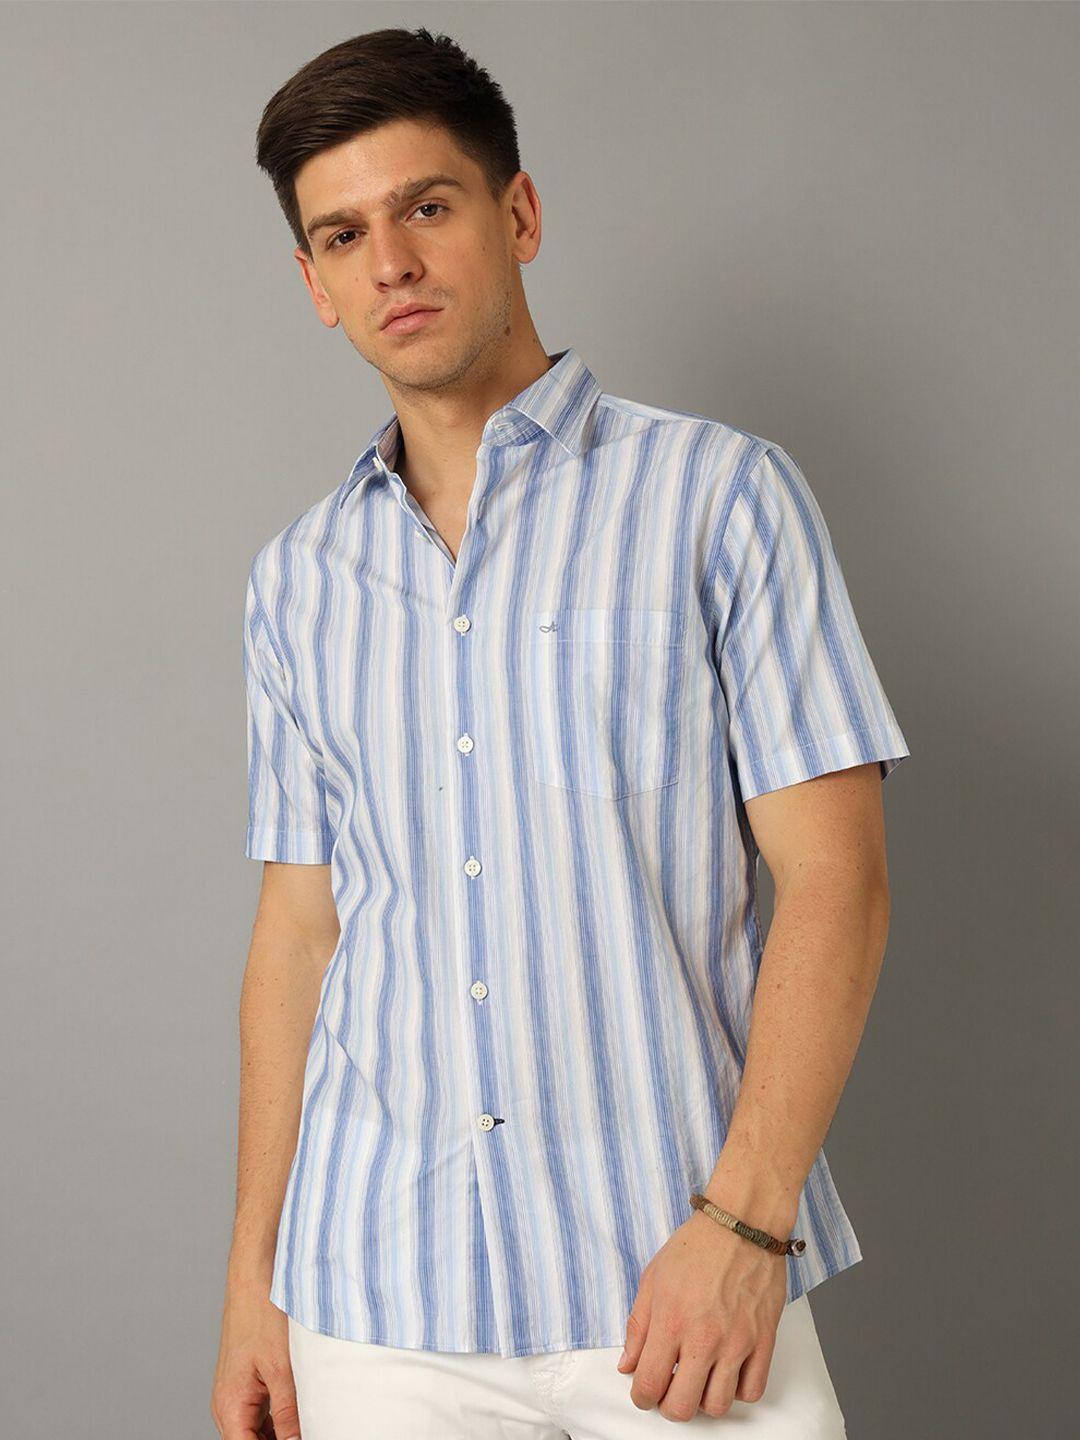 aldeno india slim striped pure cotton casual shirt